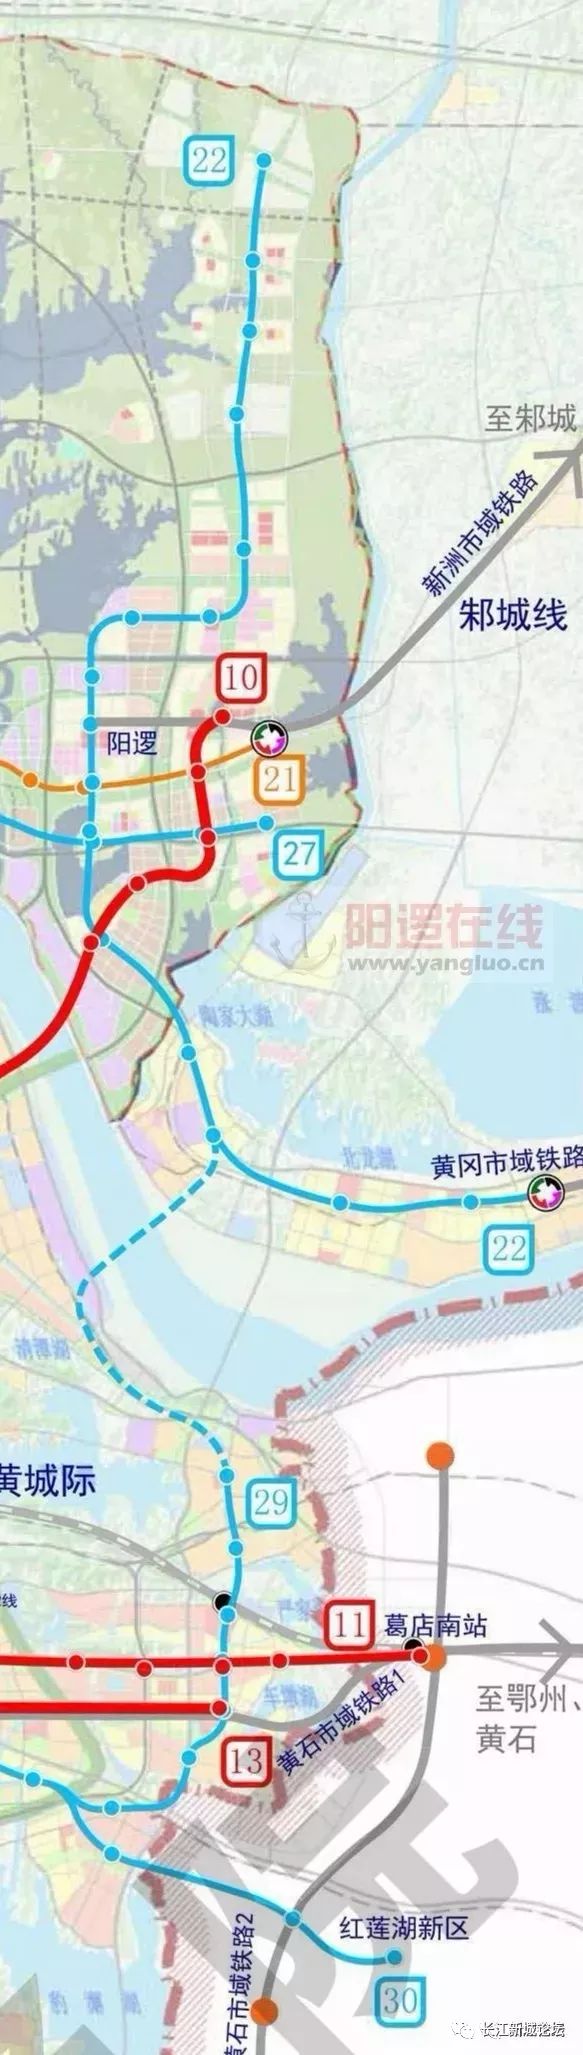 第五轮地铁建设规划方案 编制的前期工作已启动 地铁22号线贯穿长江